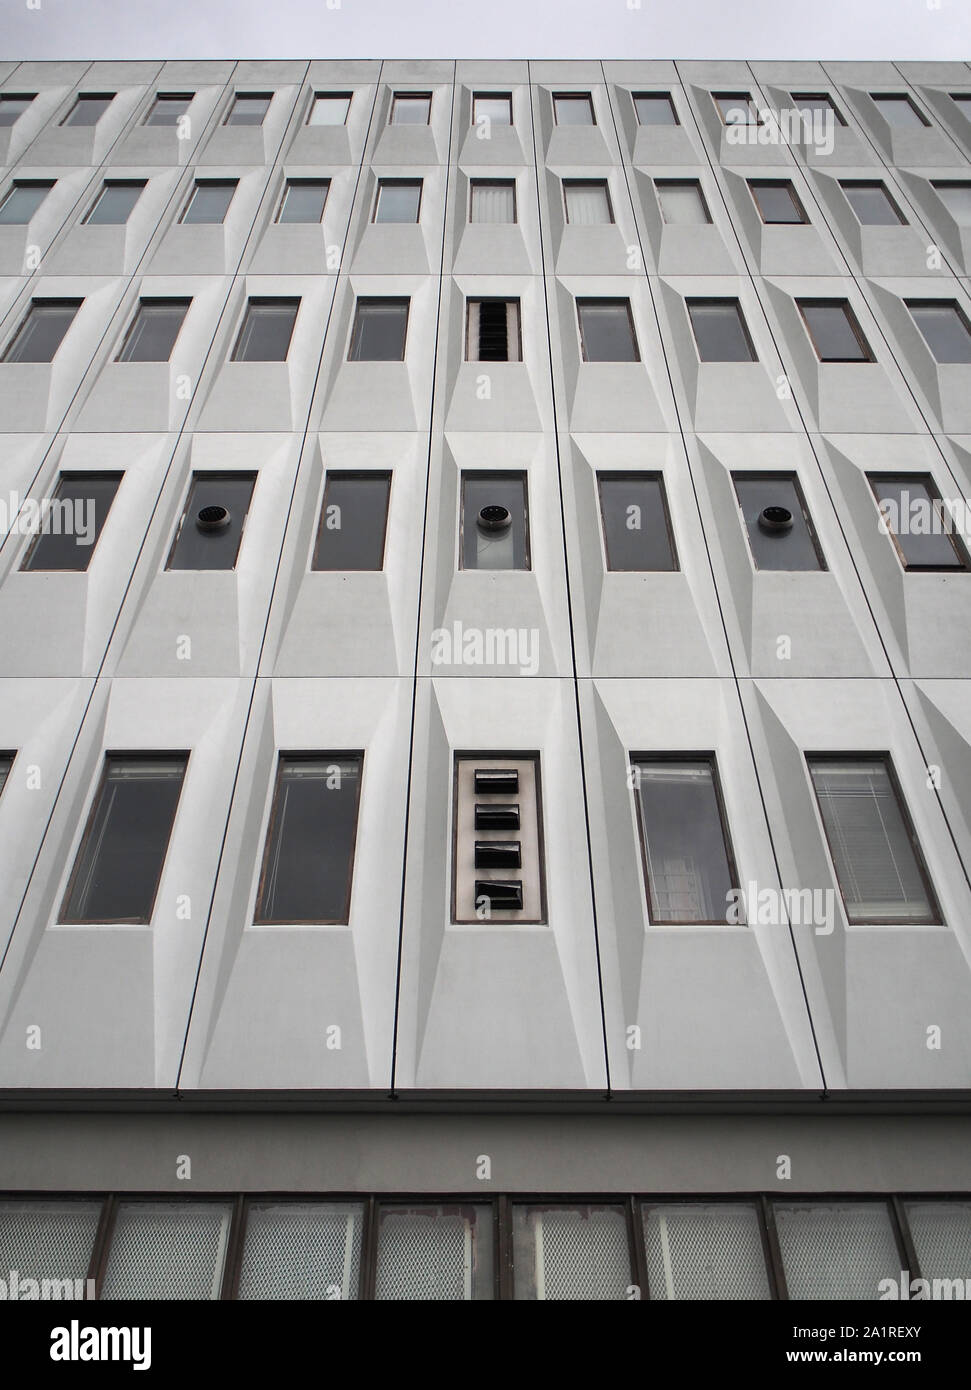 Los detalles arquitectónicos de la central telefónica, brutalist Kettering, REINO UNIDO Foto de stock